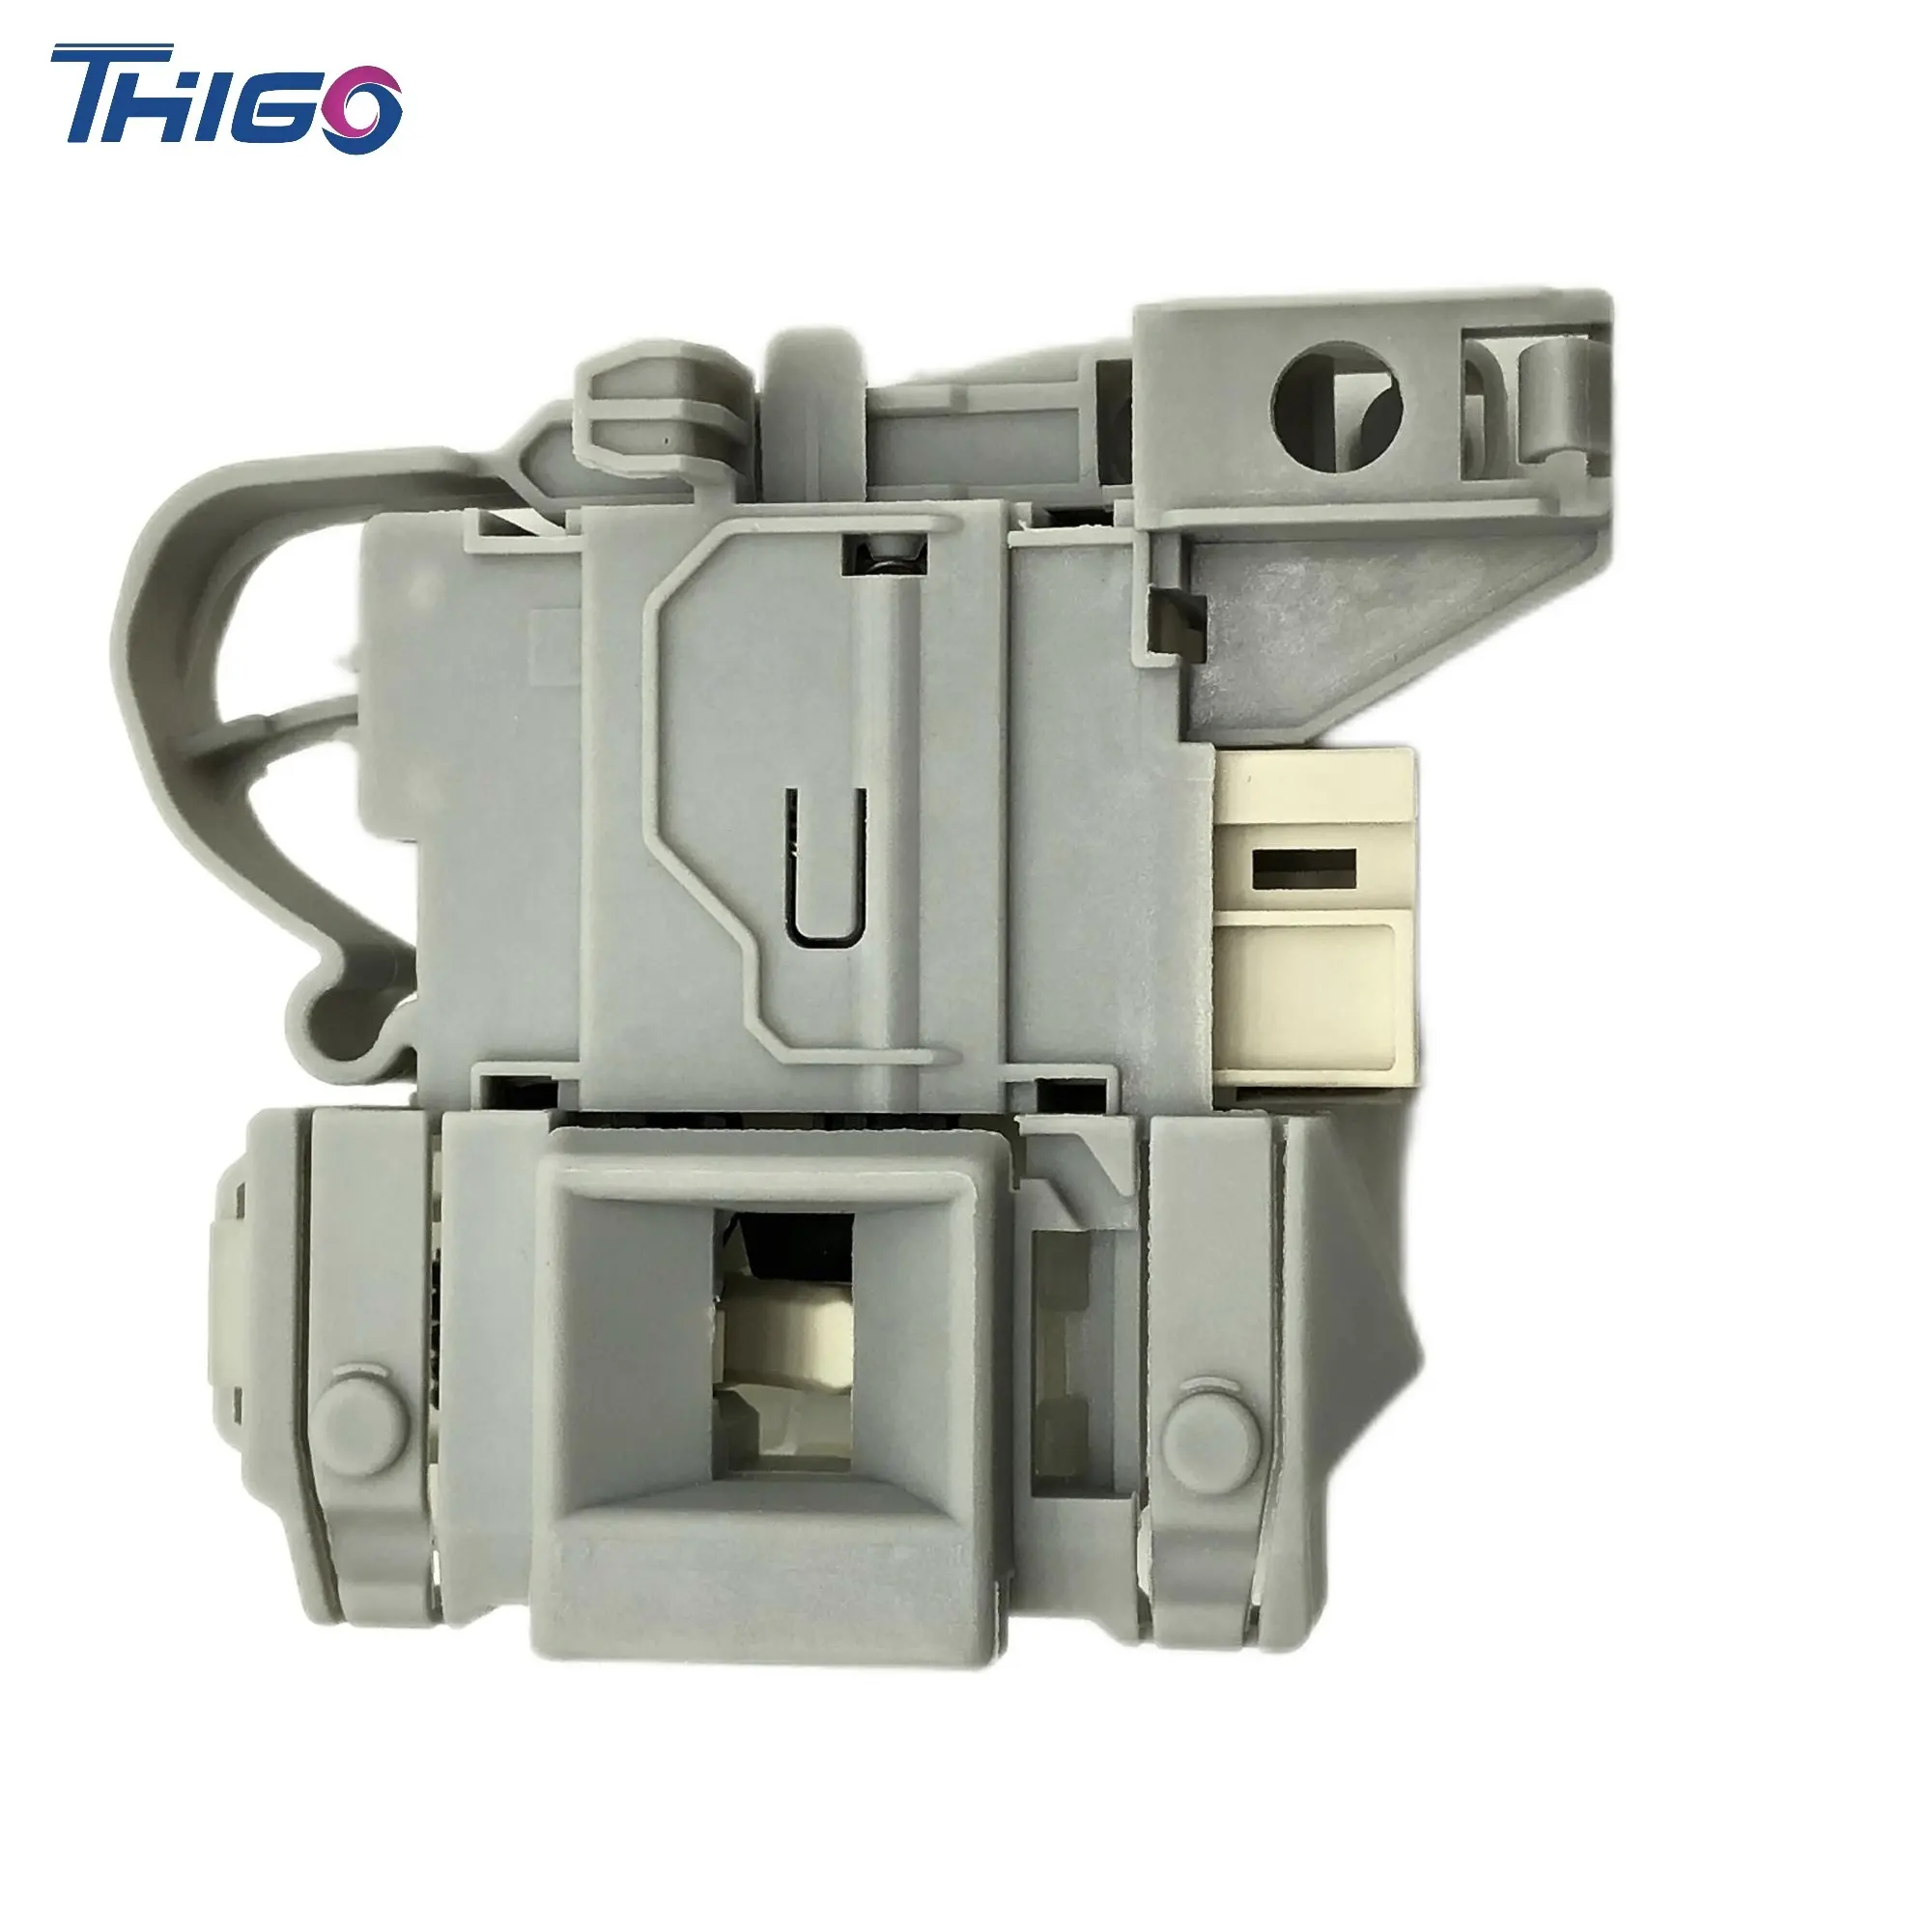 THIGO Well-interruptor de puerta para lavadora, producto Electrolux, Toshiba, LG, Bosch, Samsung, piezas de repuesto